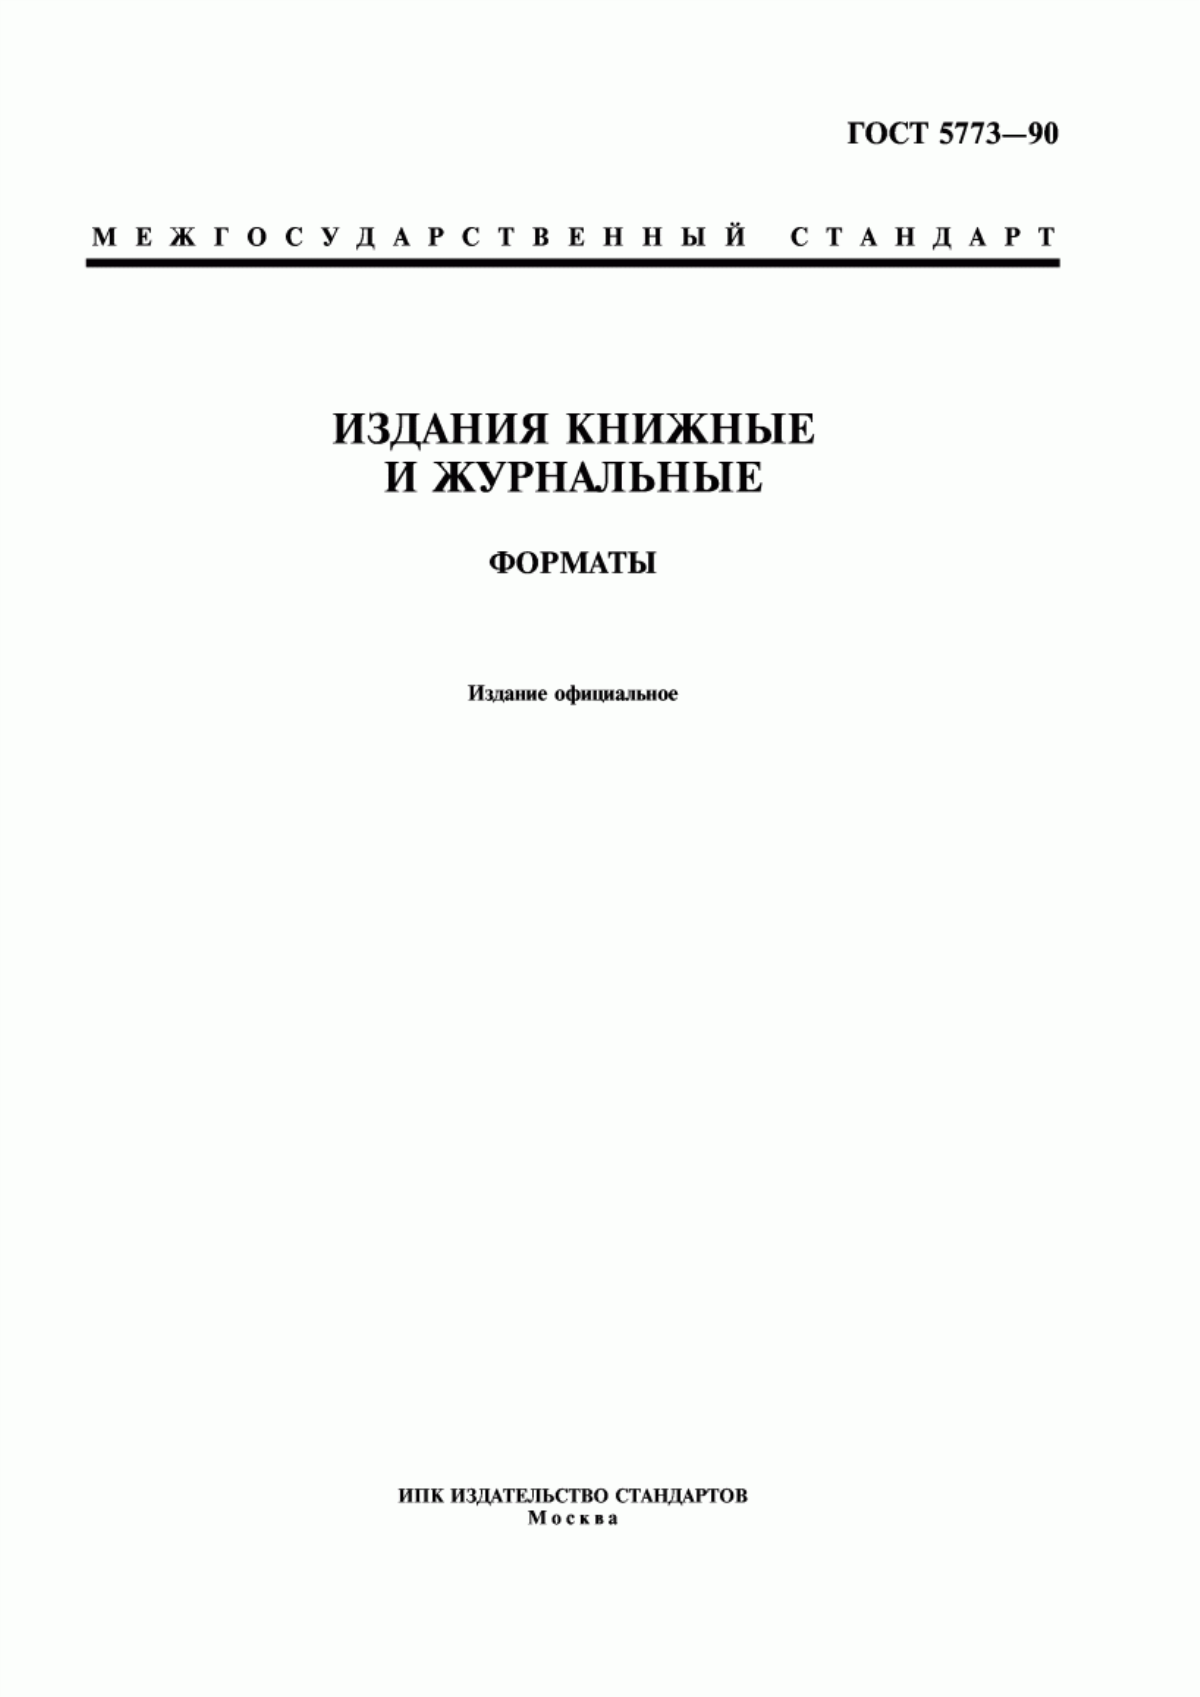 ГОСТ 5773-90 Издания книжные и журнальные. Форматы